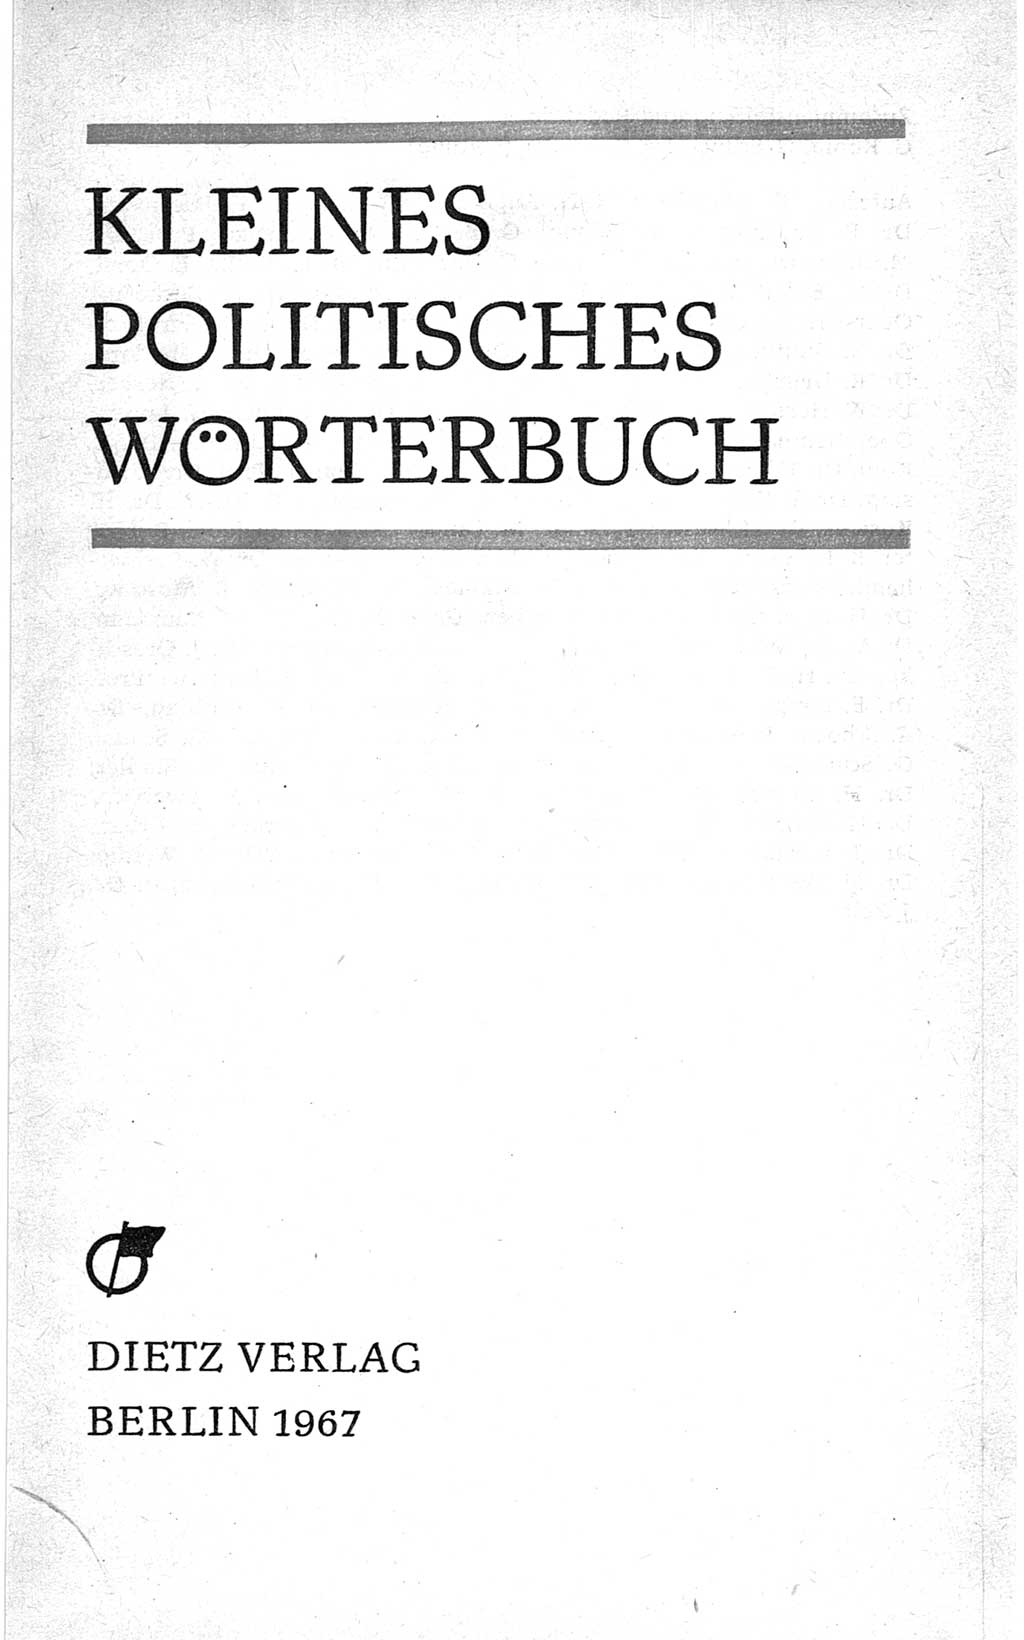 Kleines politisches Wörterbuch [Deutsche Demokratische Republik (DDR)] 1967, Seite 3 (Kl. pol. Wb. DDR 1967, S. 3)